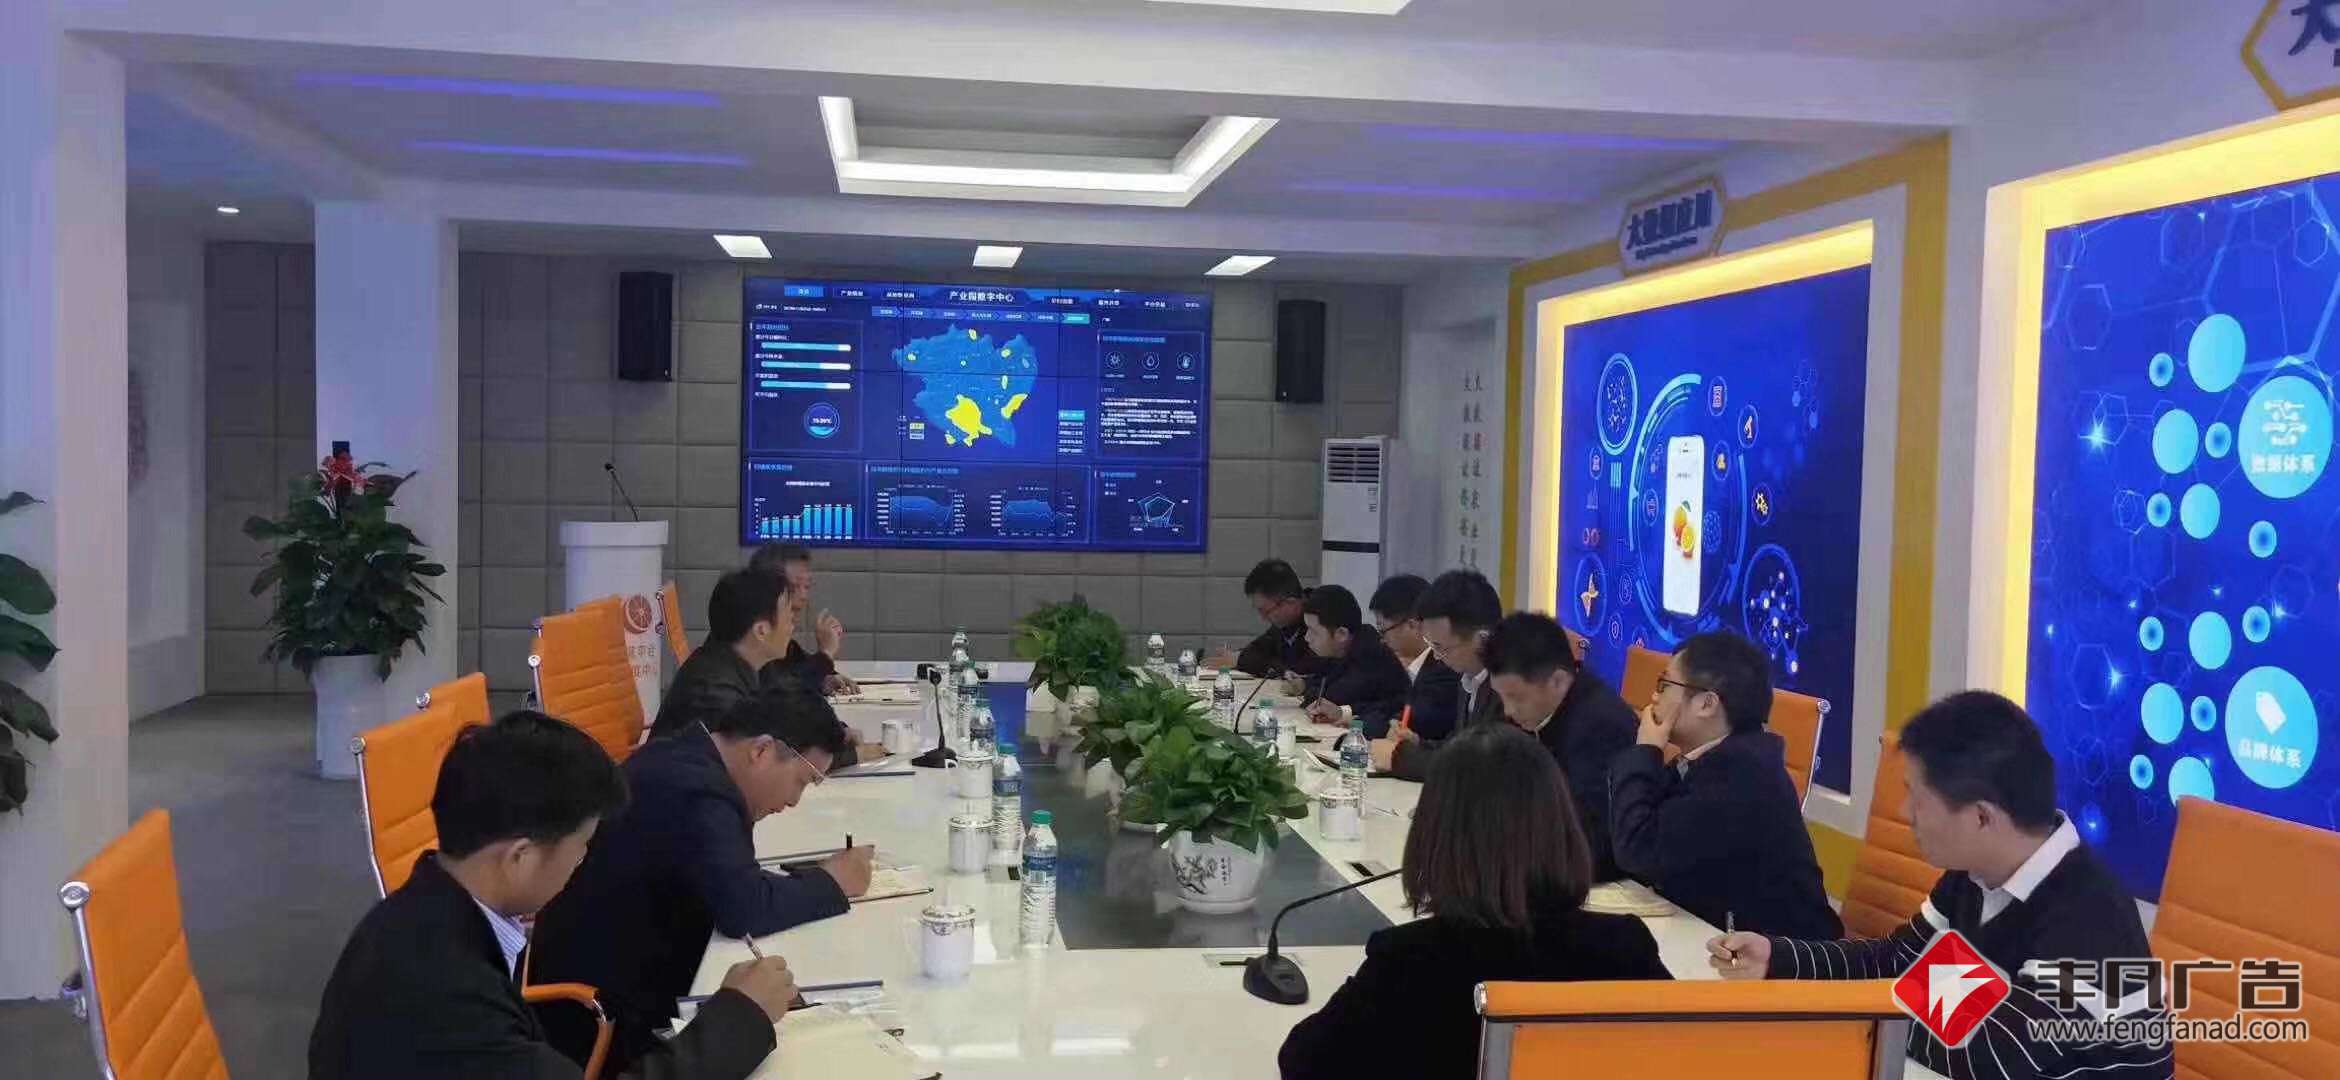 信丰县赣南脐橙大数据展厅广告装饰项目